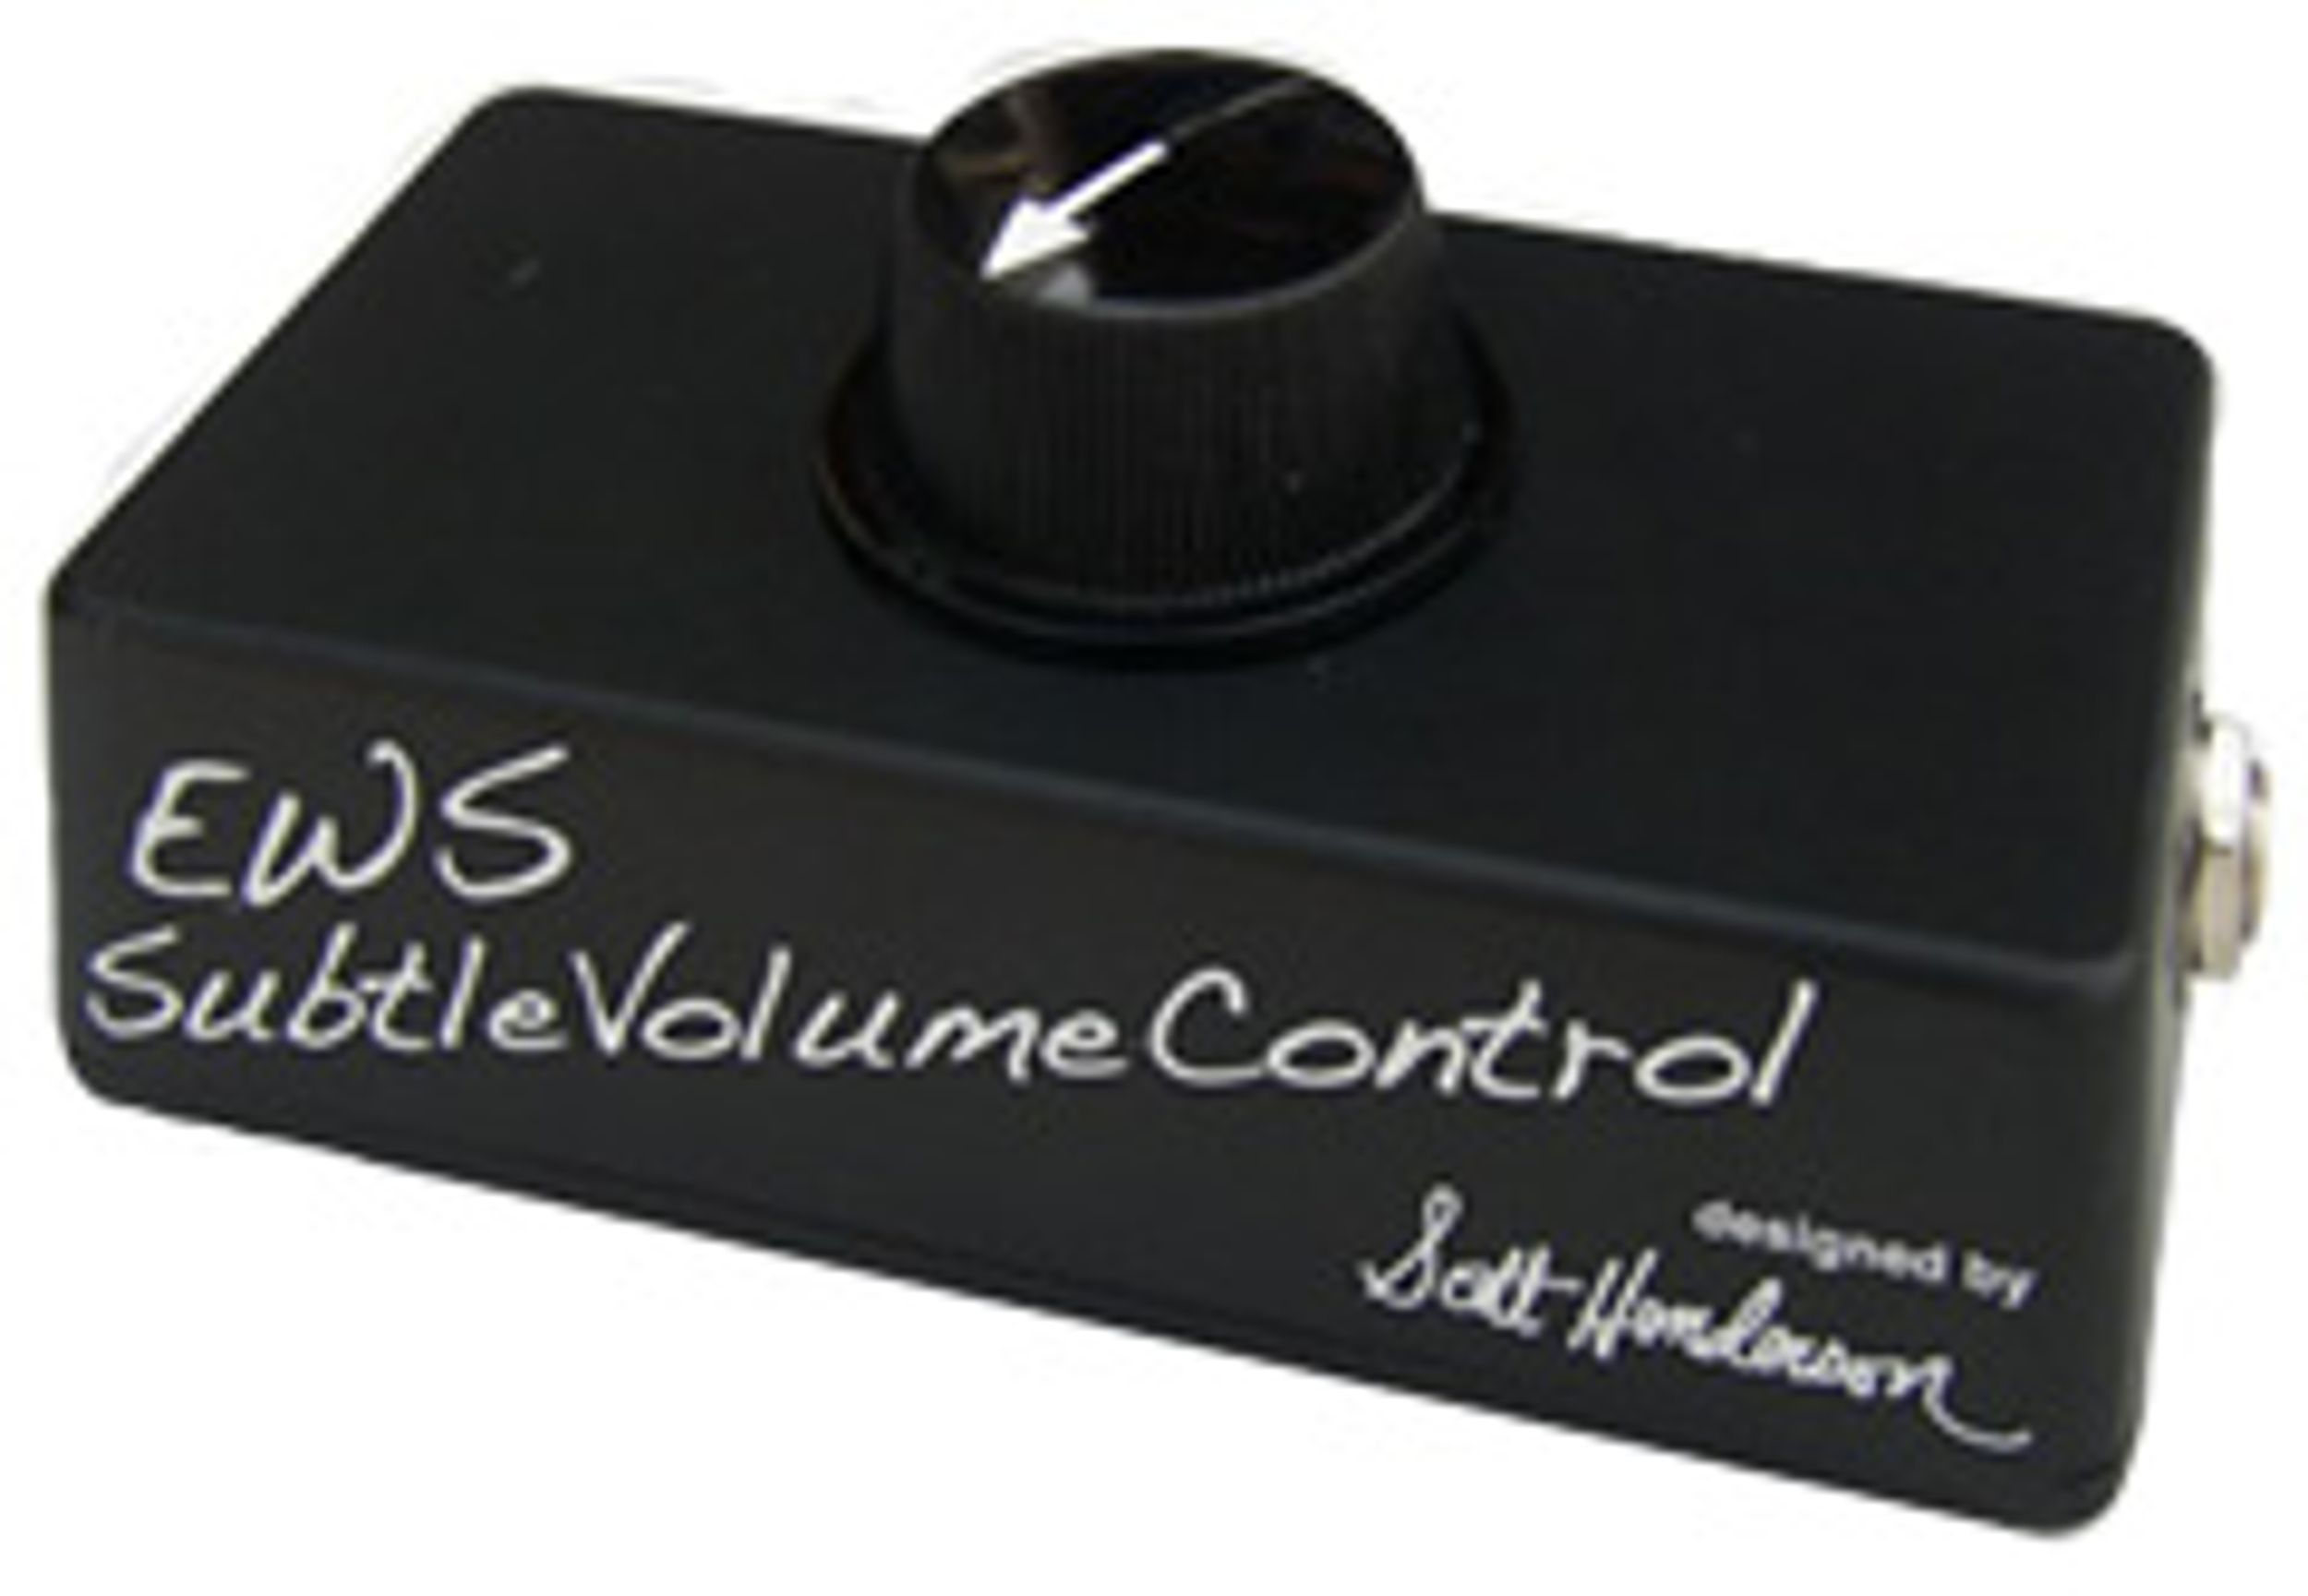 E.W.S. Announces Scott Henderson Subtle Volume Control